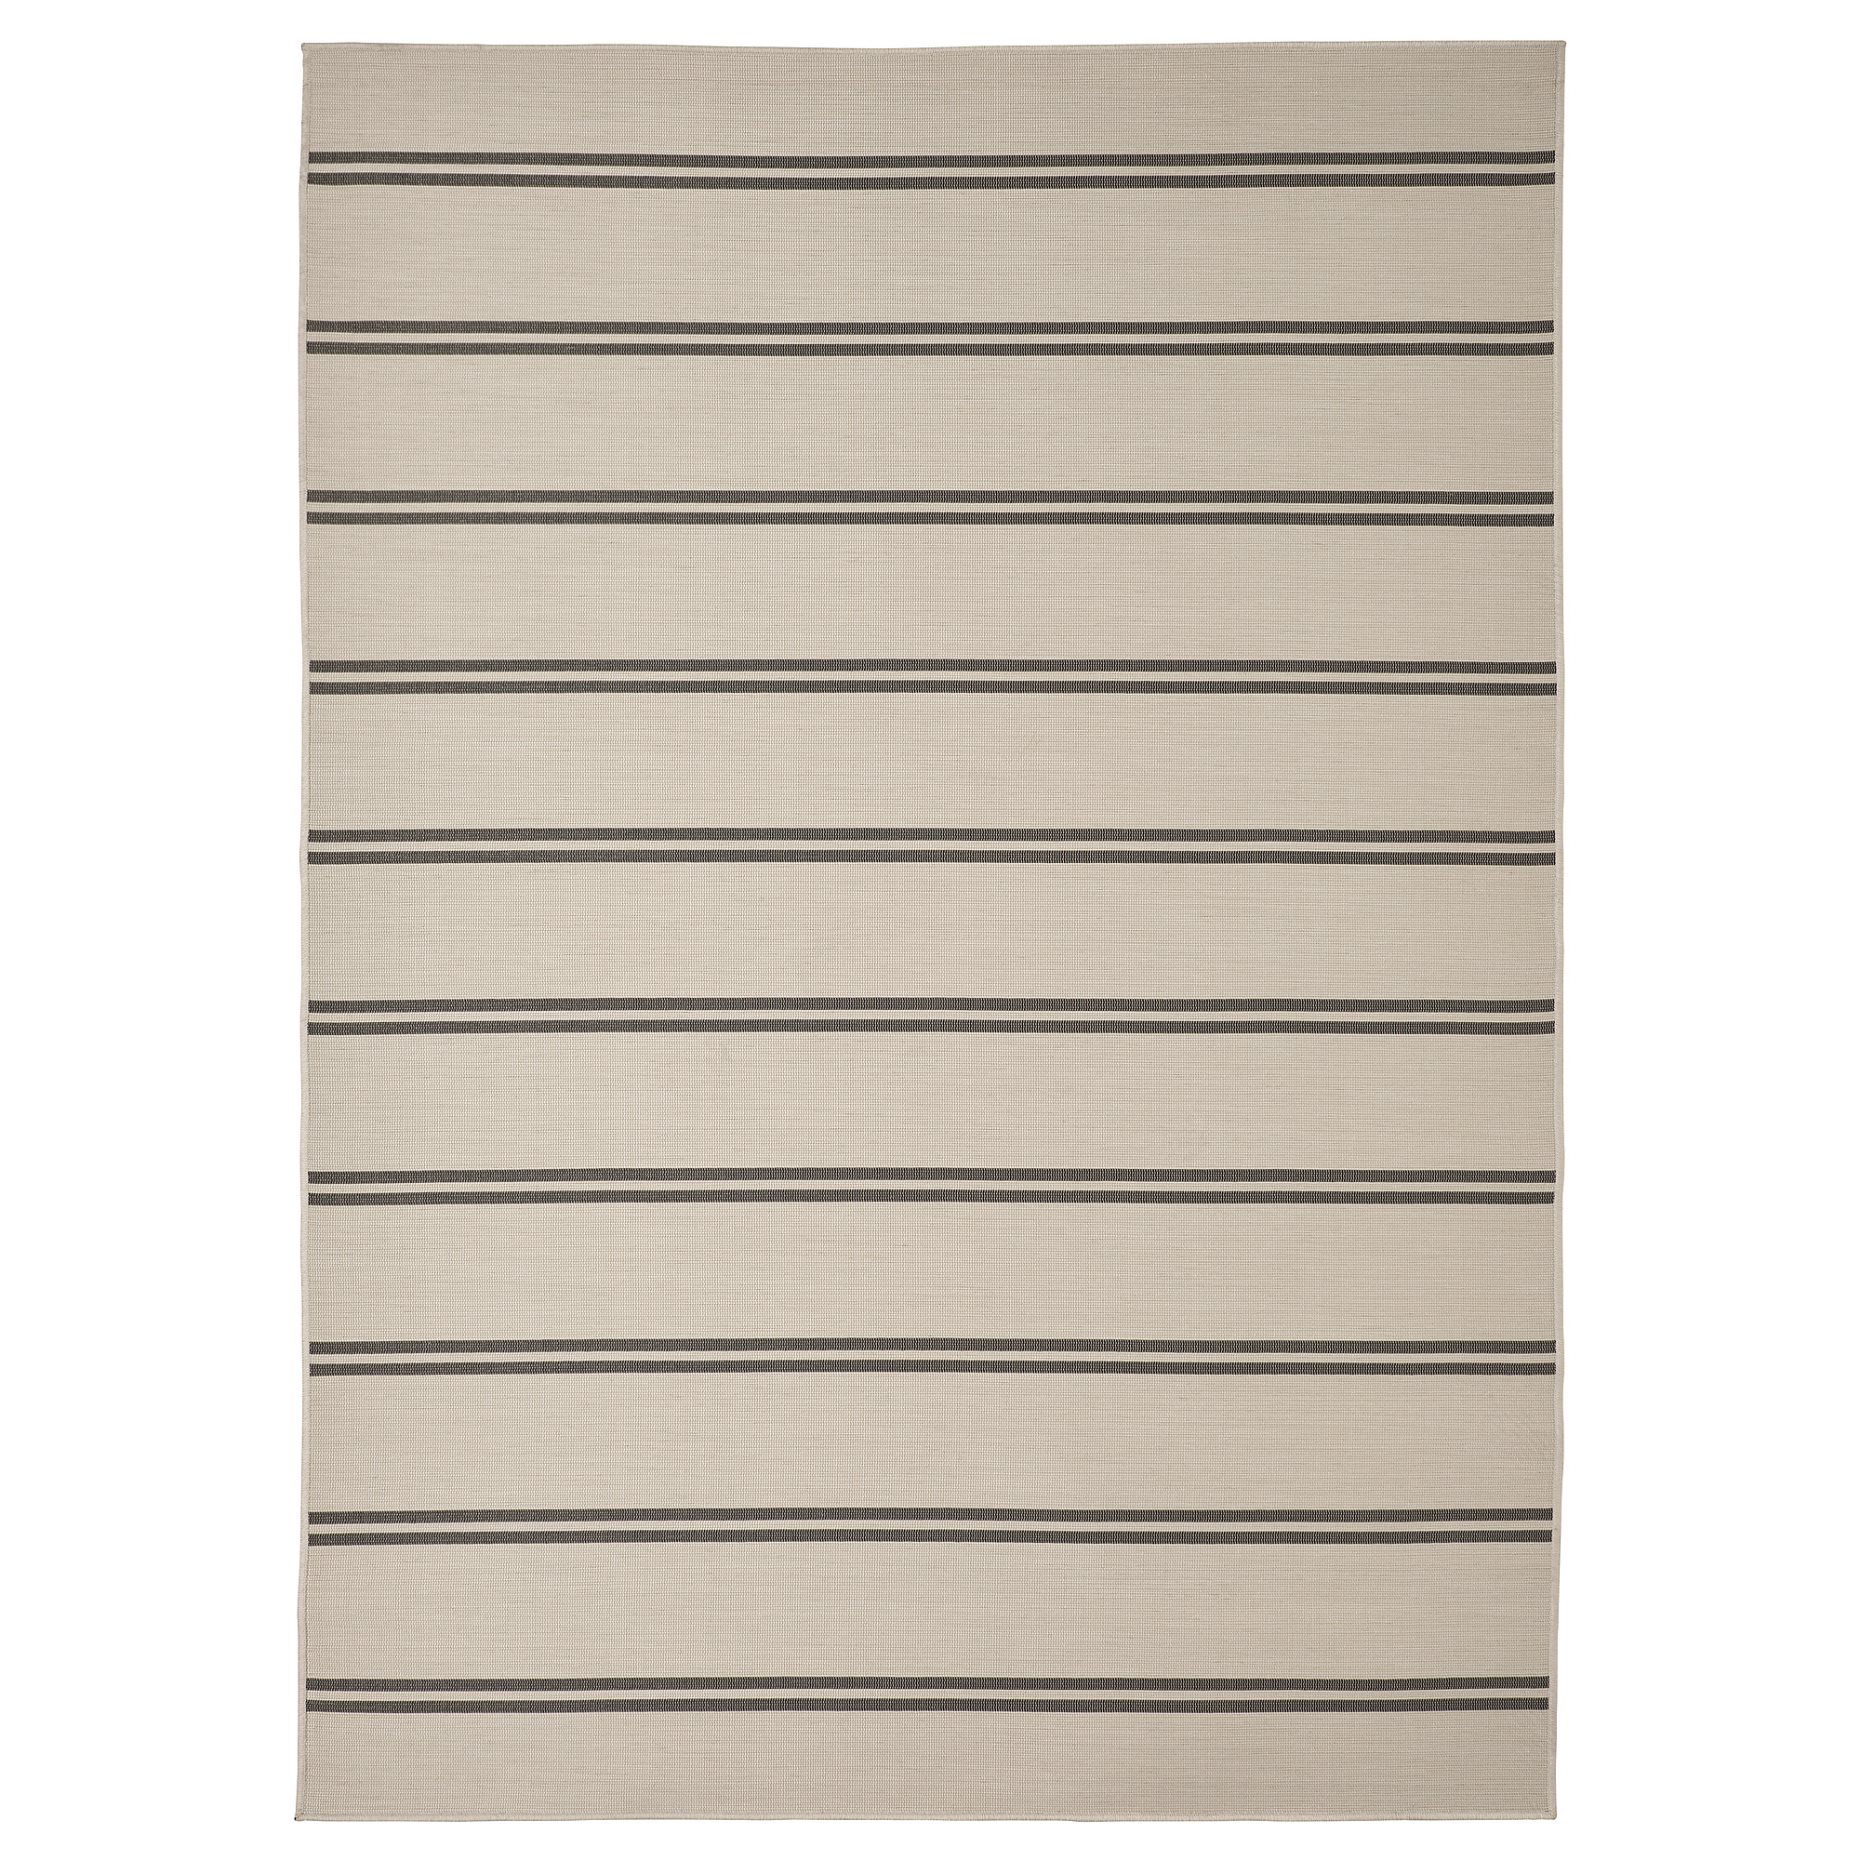 VIRKLUND, килим гладко тъкан на откр/закрито, 160x230 см, 505.179.44